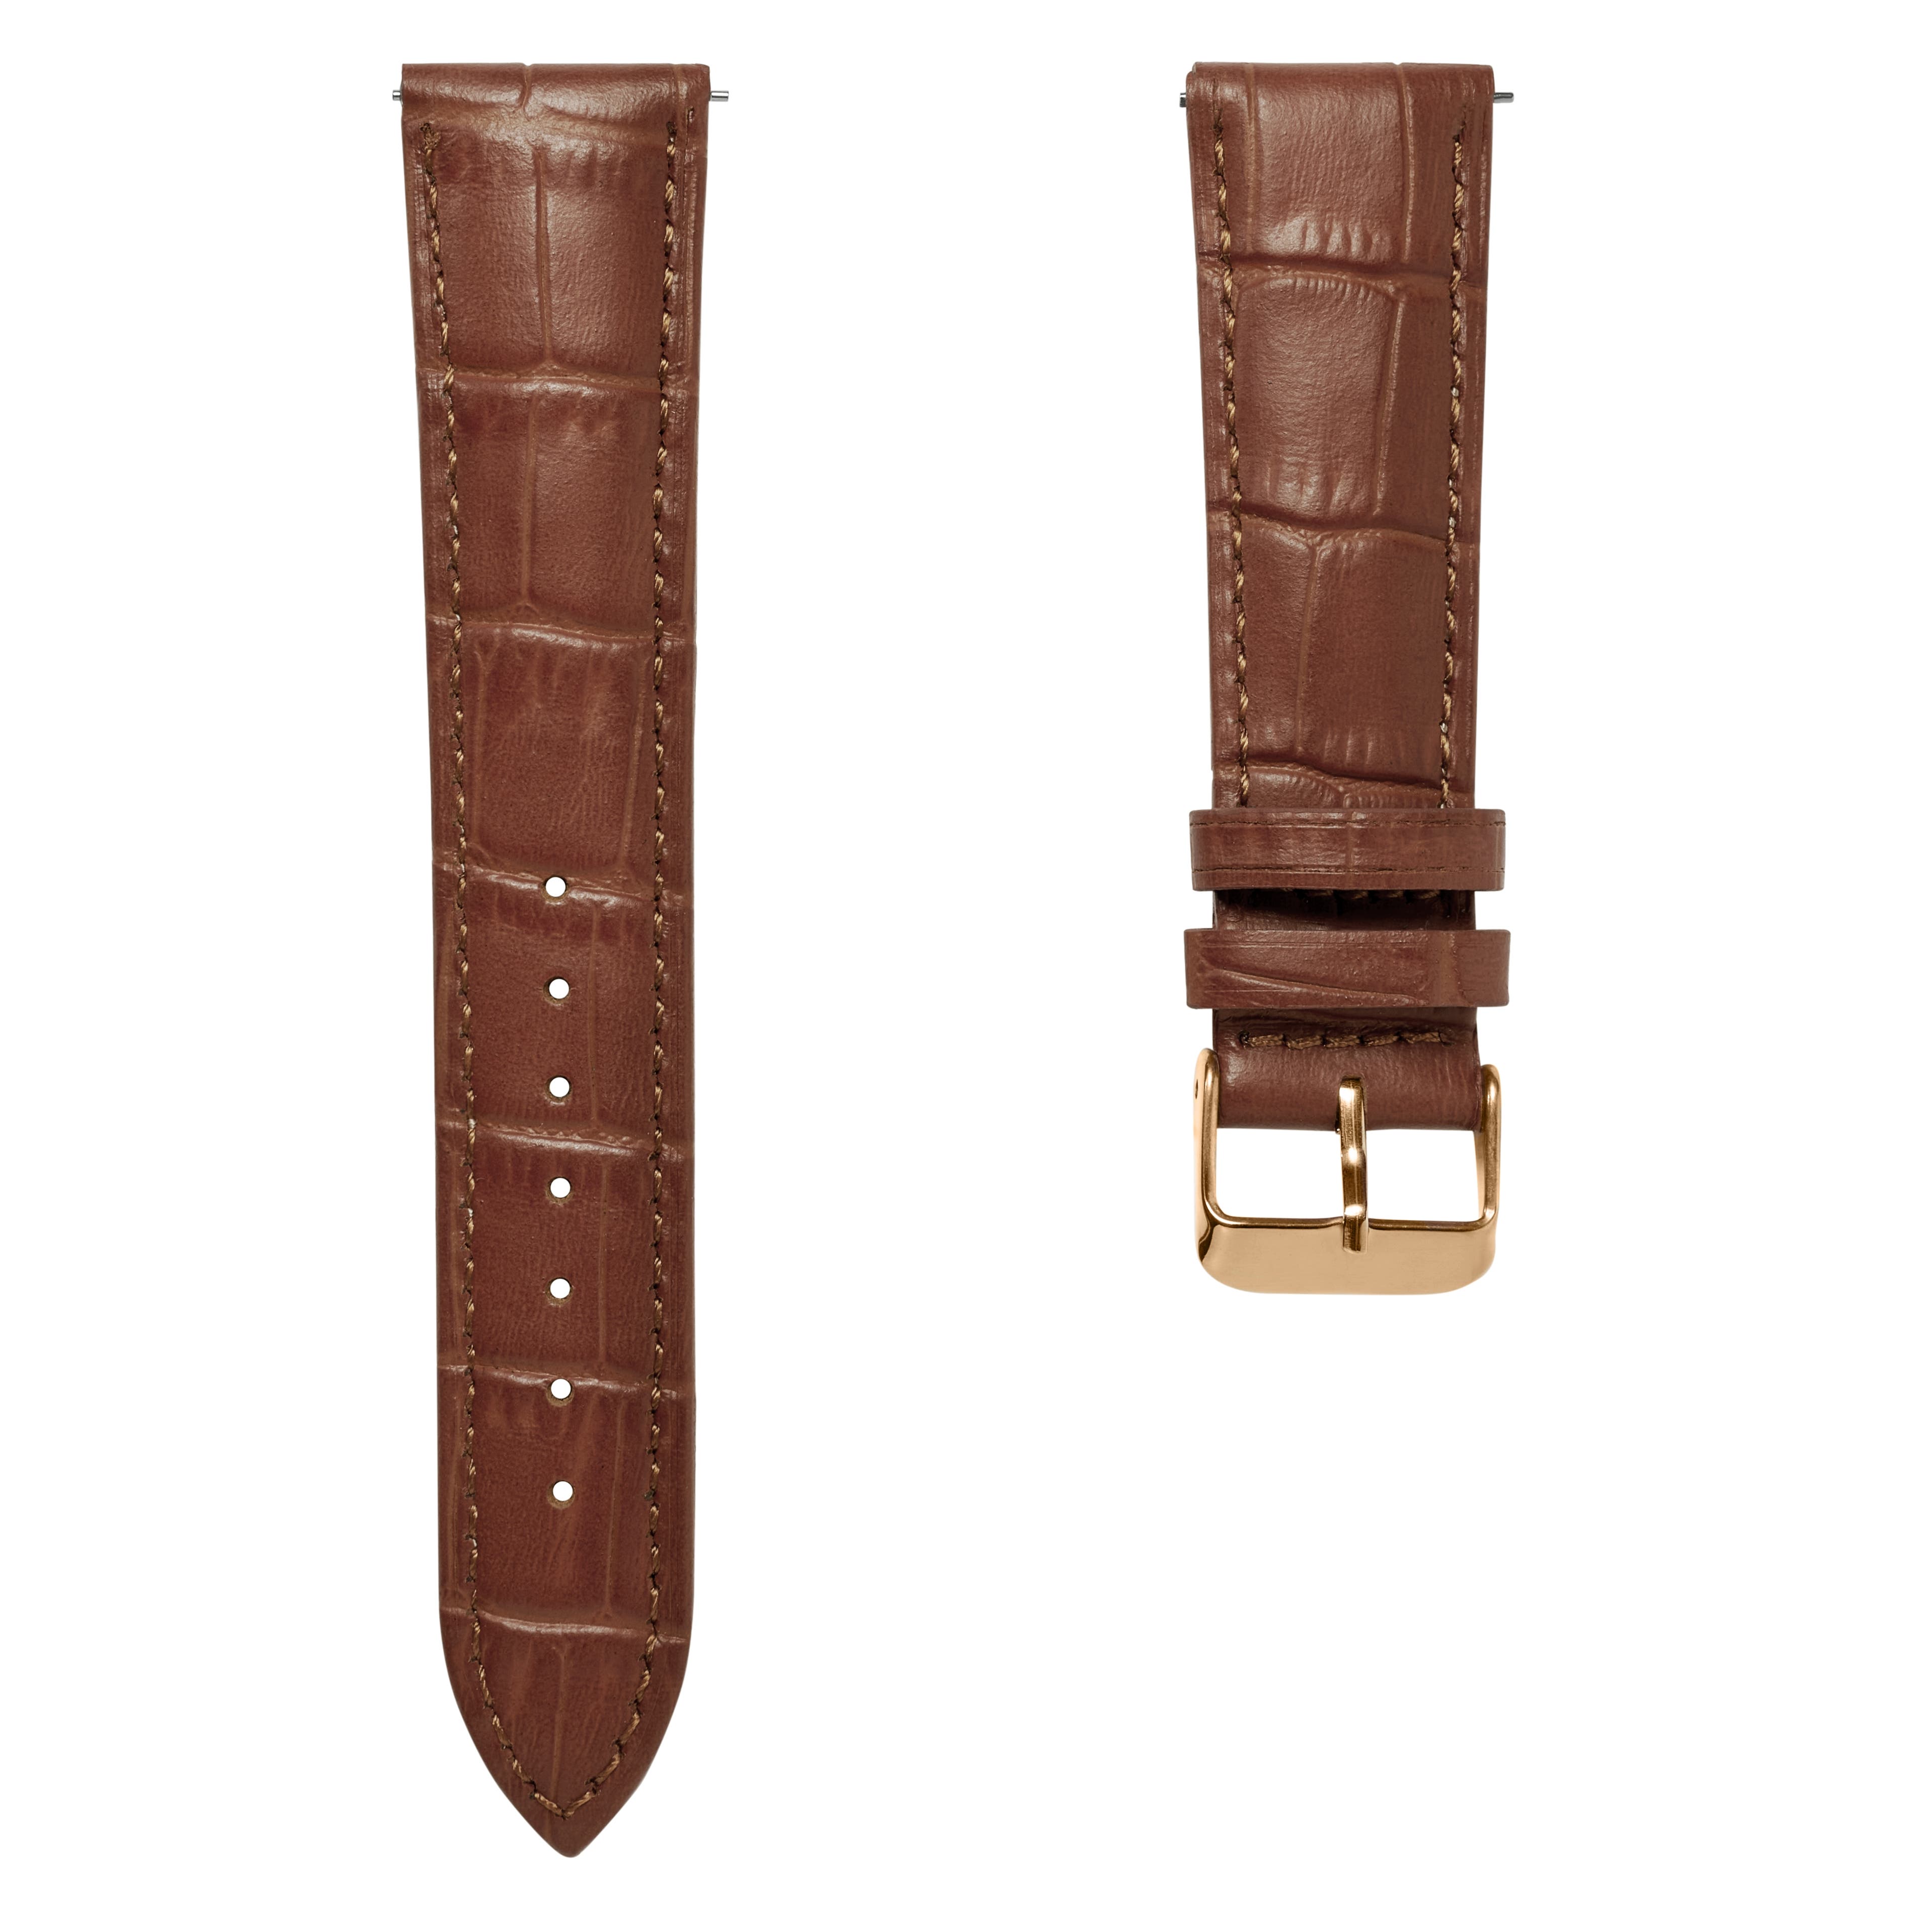 18mm kožený řemínek na hodinky s krokodýlím vzorem a sponou v růžovo-zlaté barvě - rychlé odepnutí